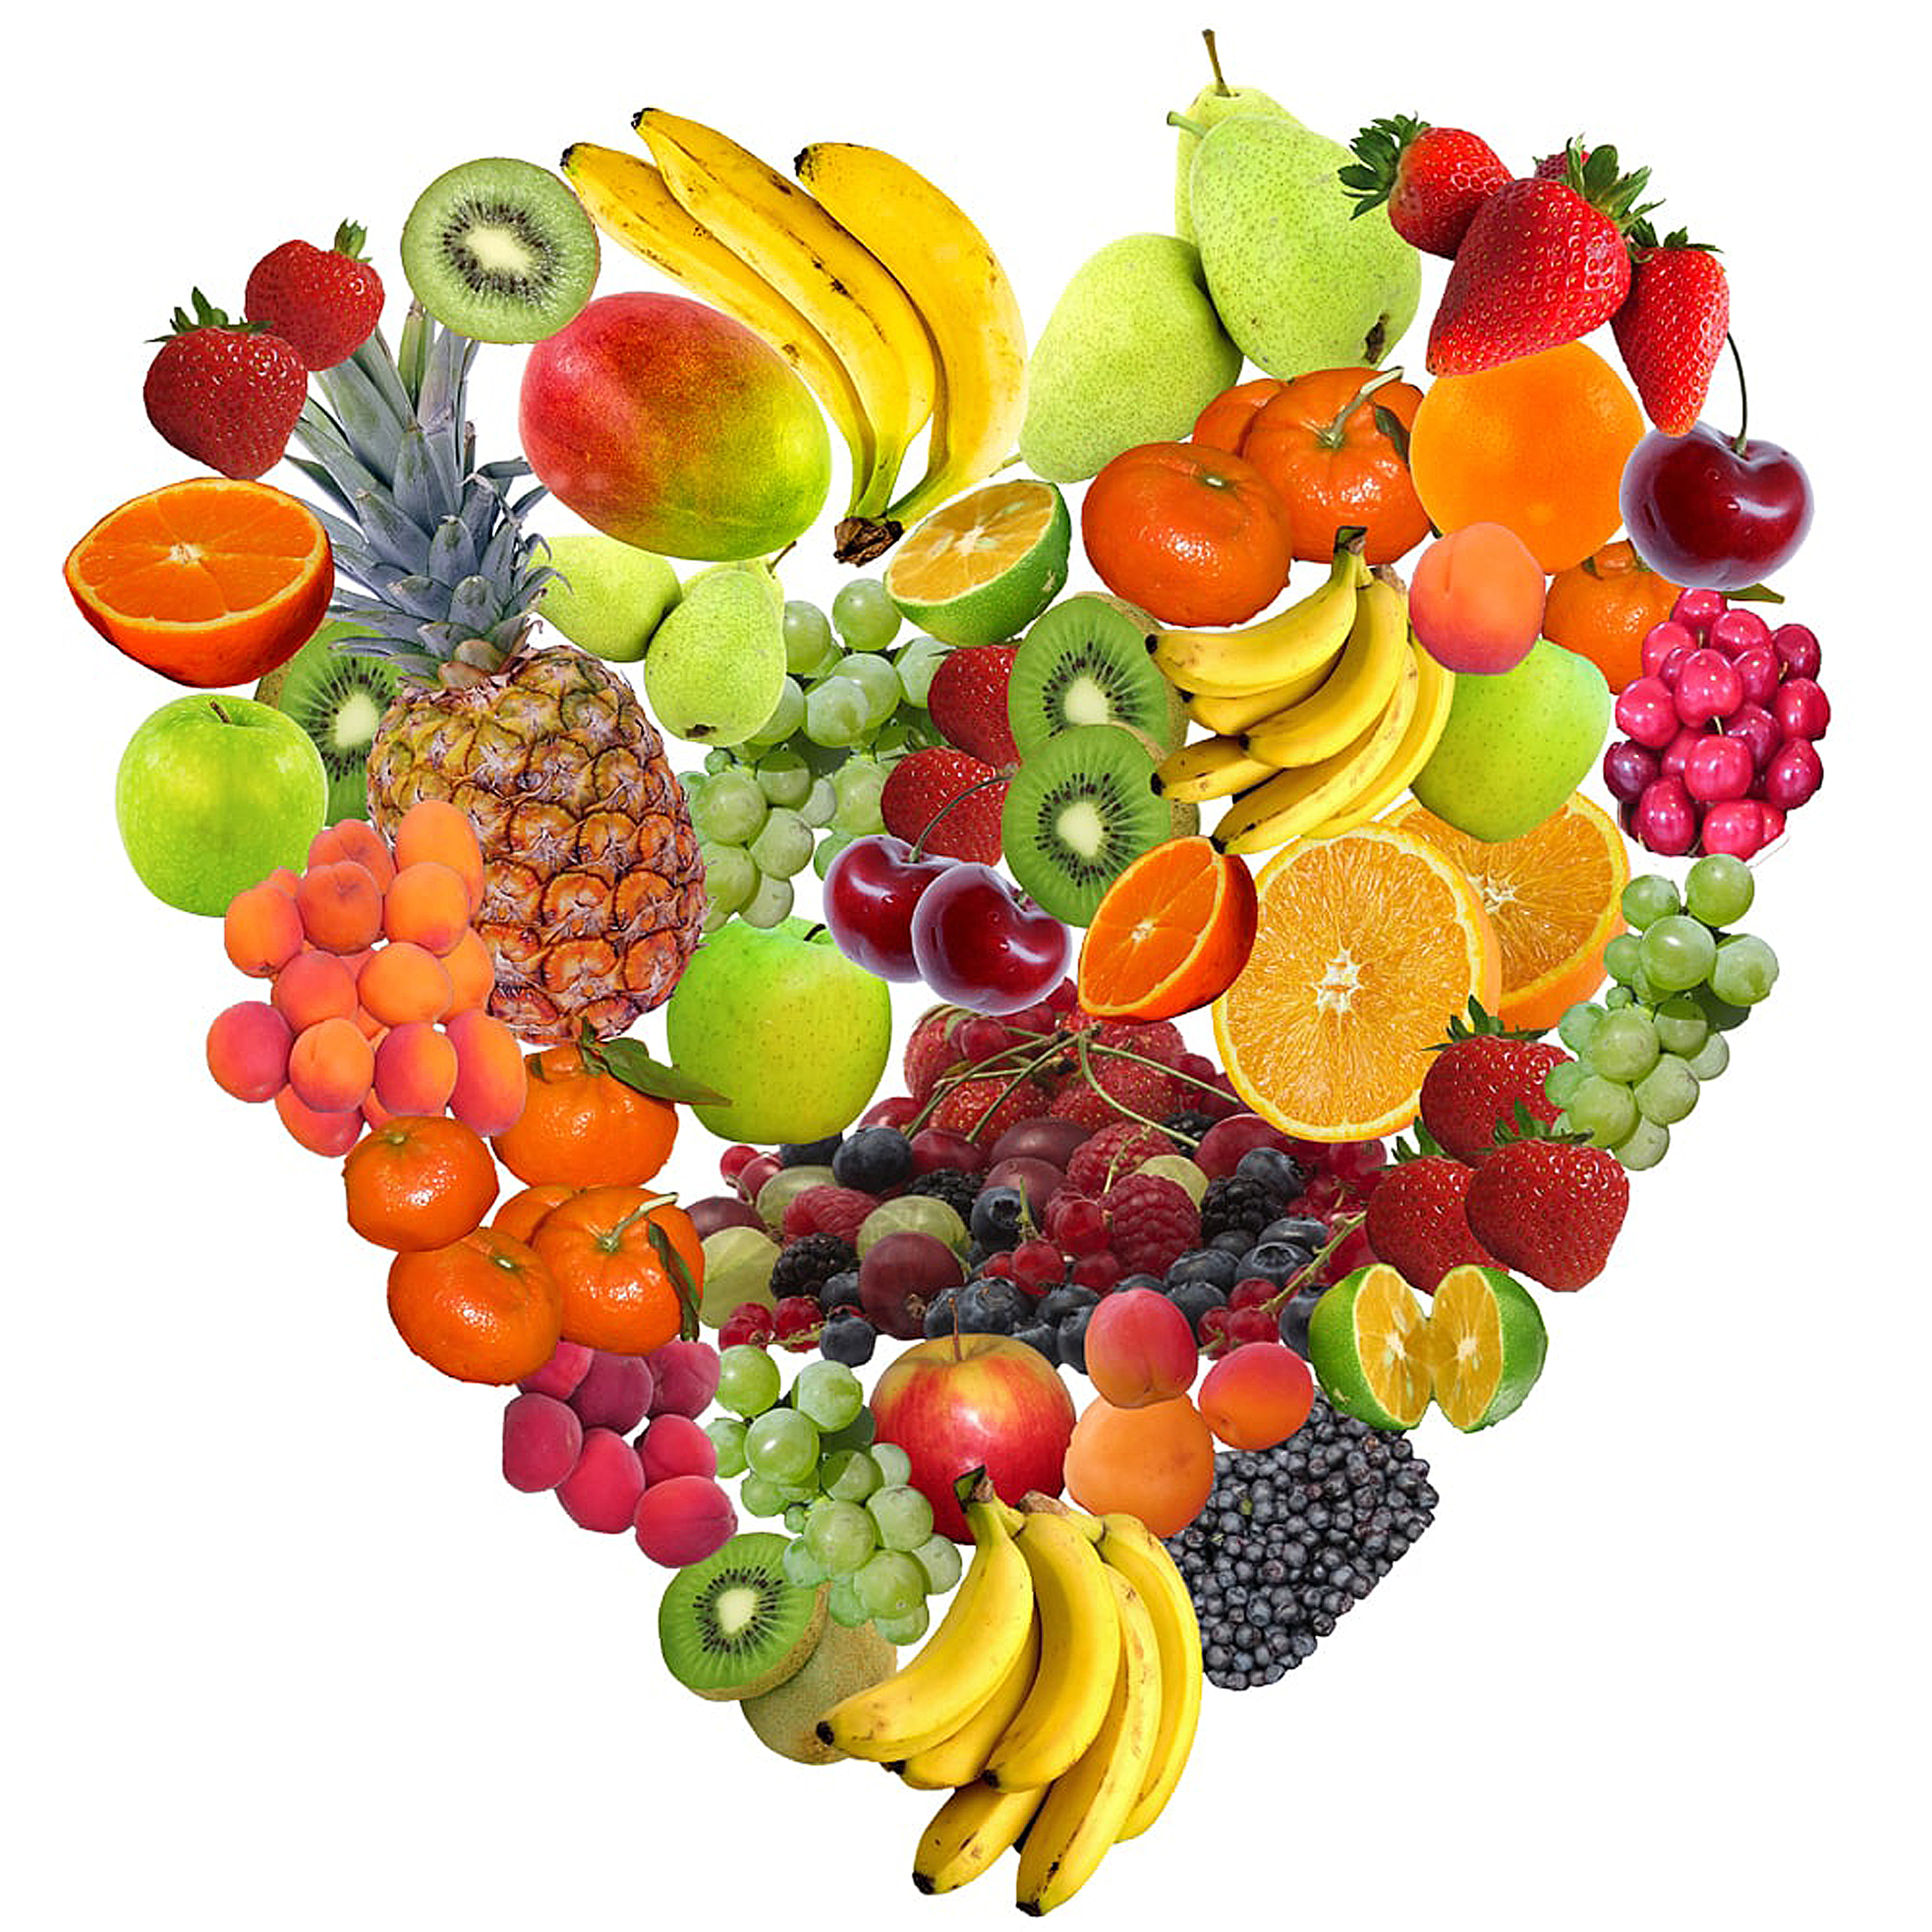 Come fruta y verdura todos los días para tener una dieta saludable.